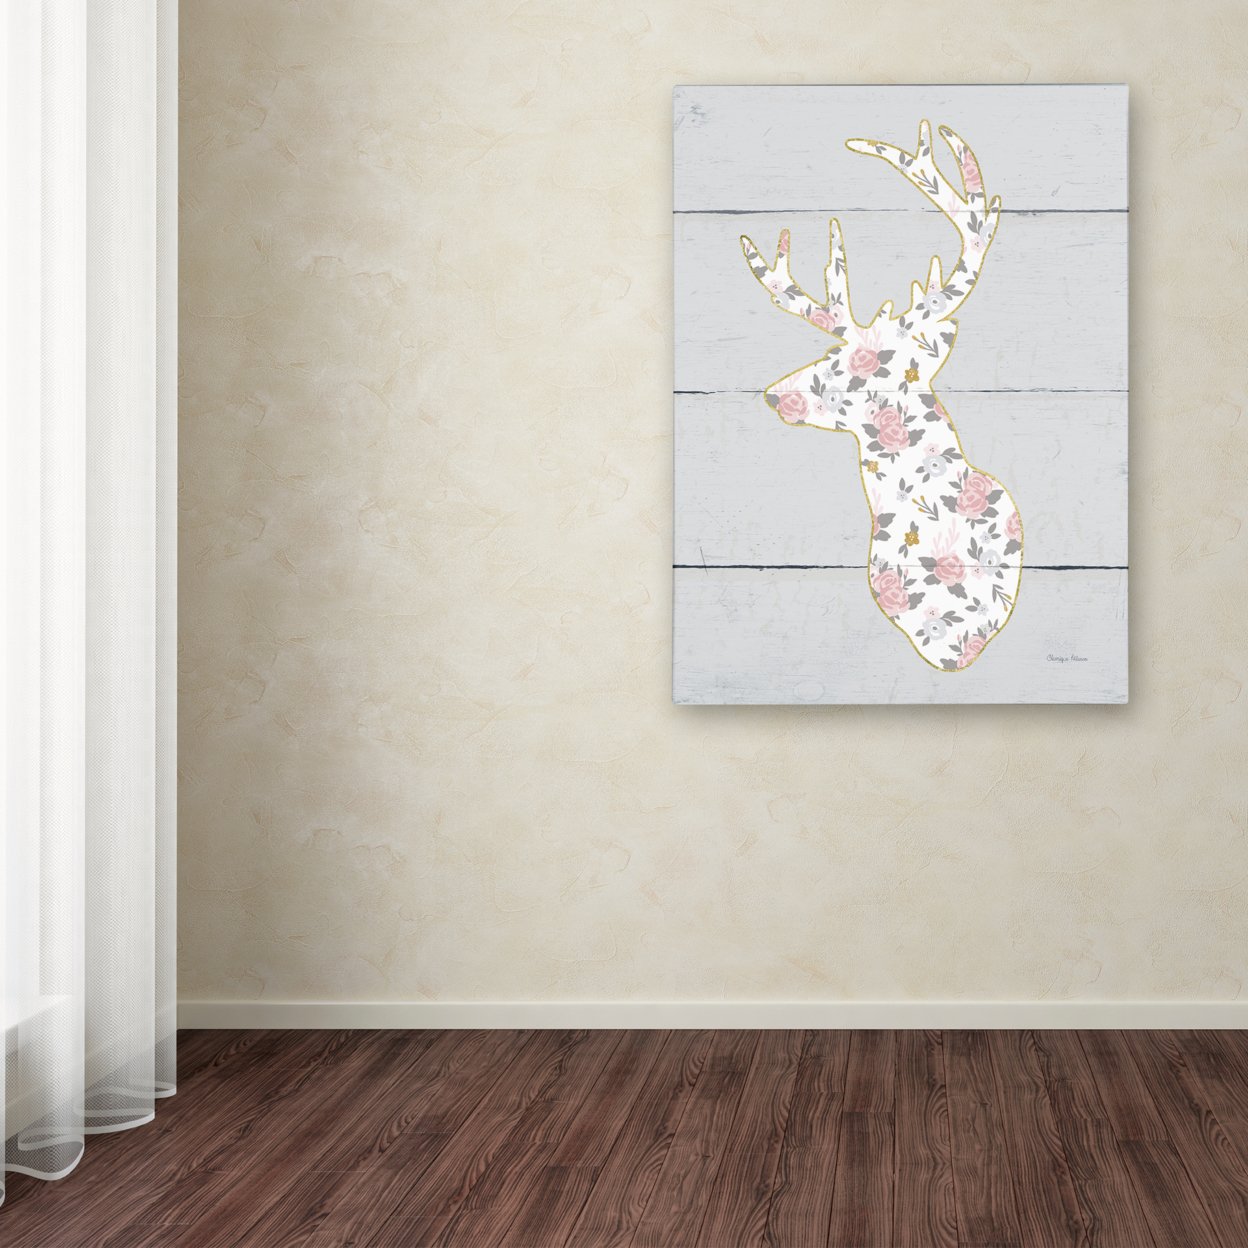 Cleonique Hilsaca 'Floral Deer II' Canvas Art 18 X 24